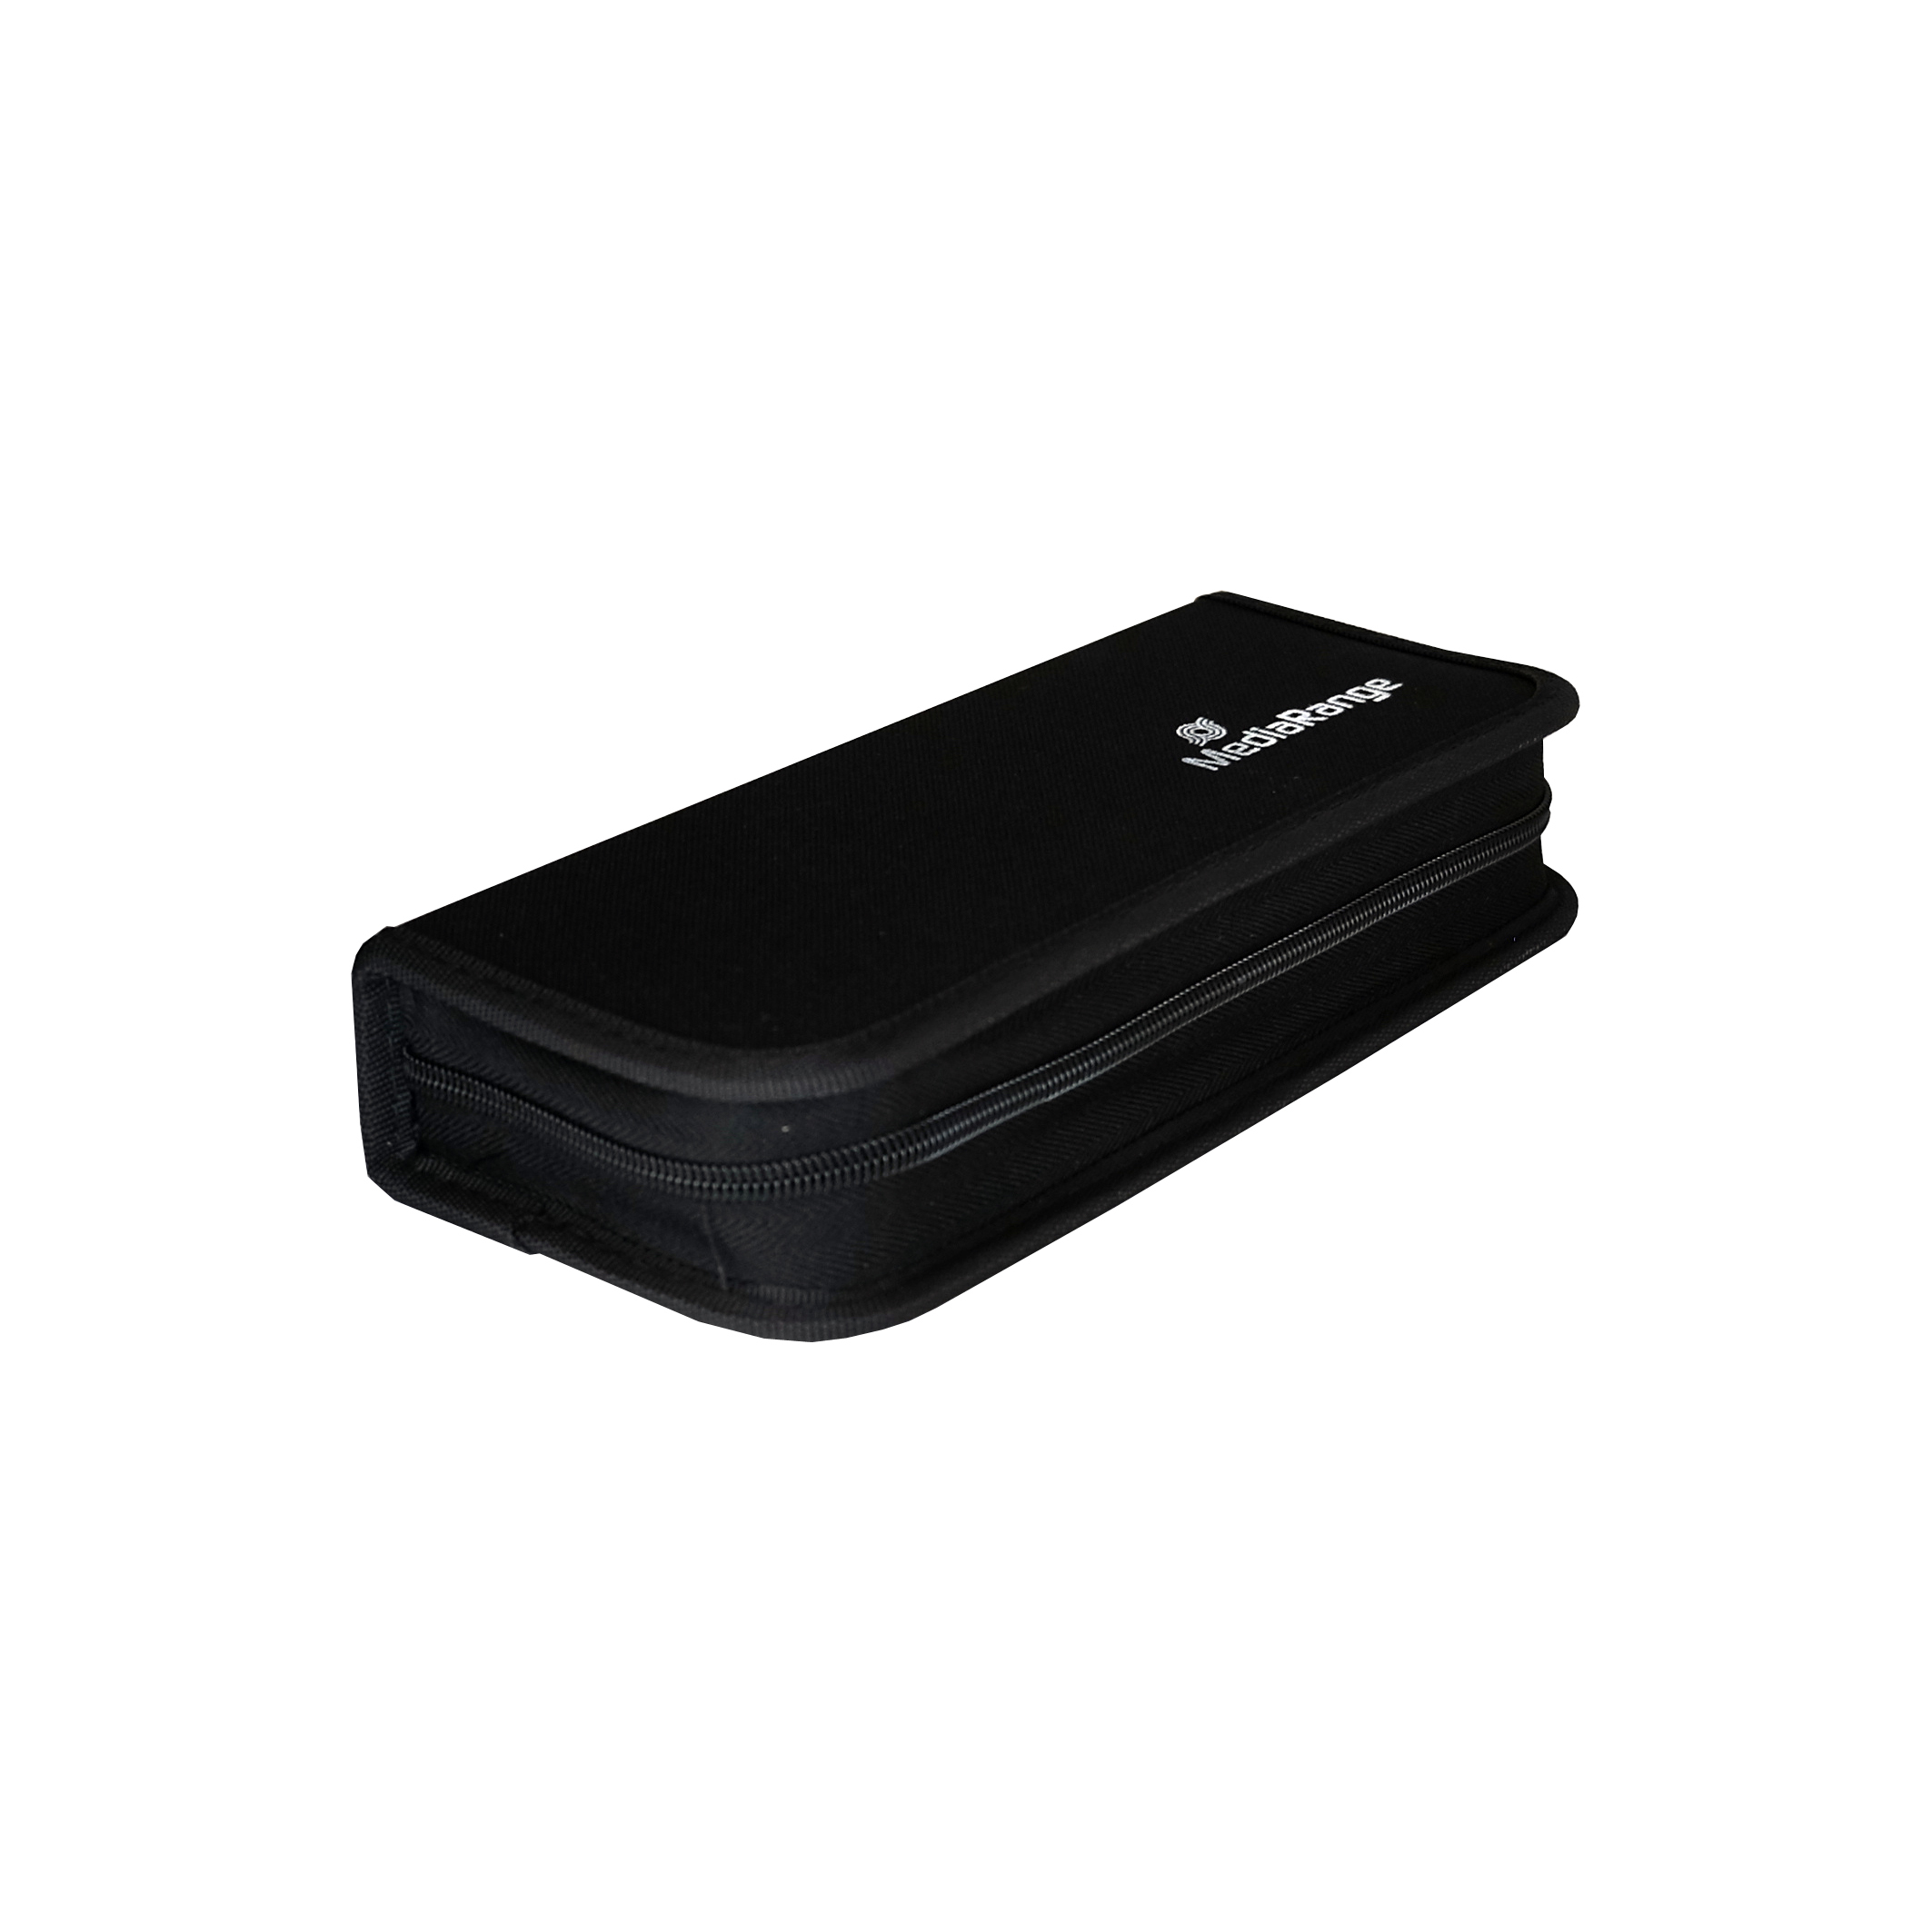 MEDIARANGE USB Wallet - Tragetasche für Speicherplatte